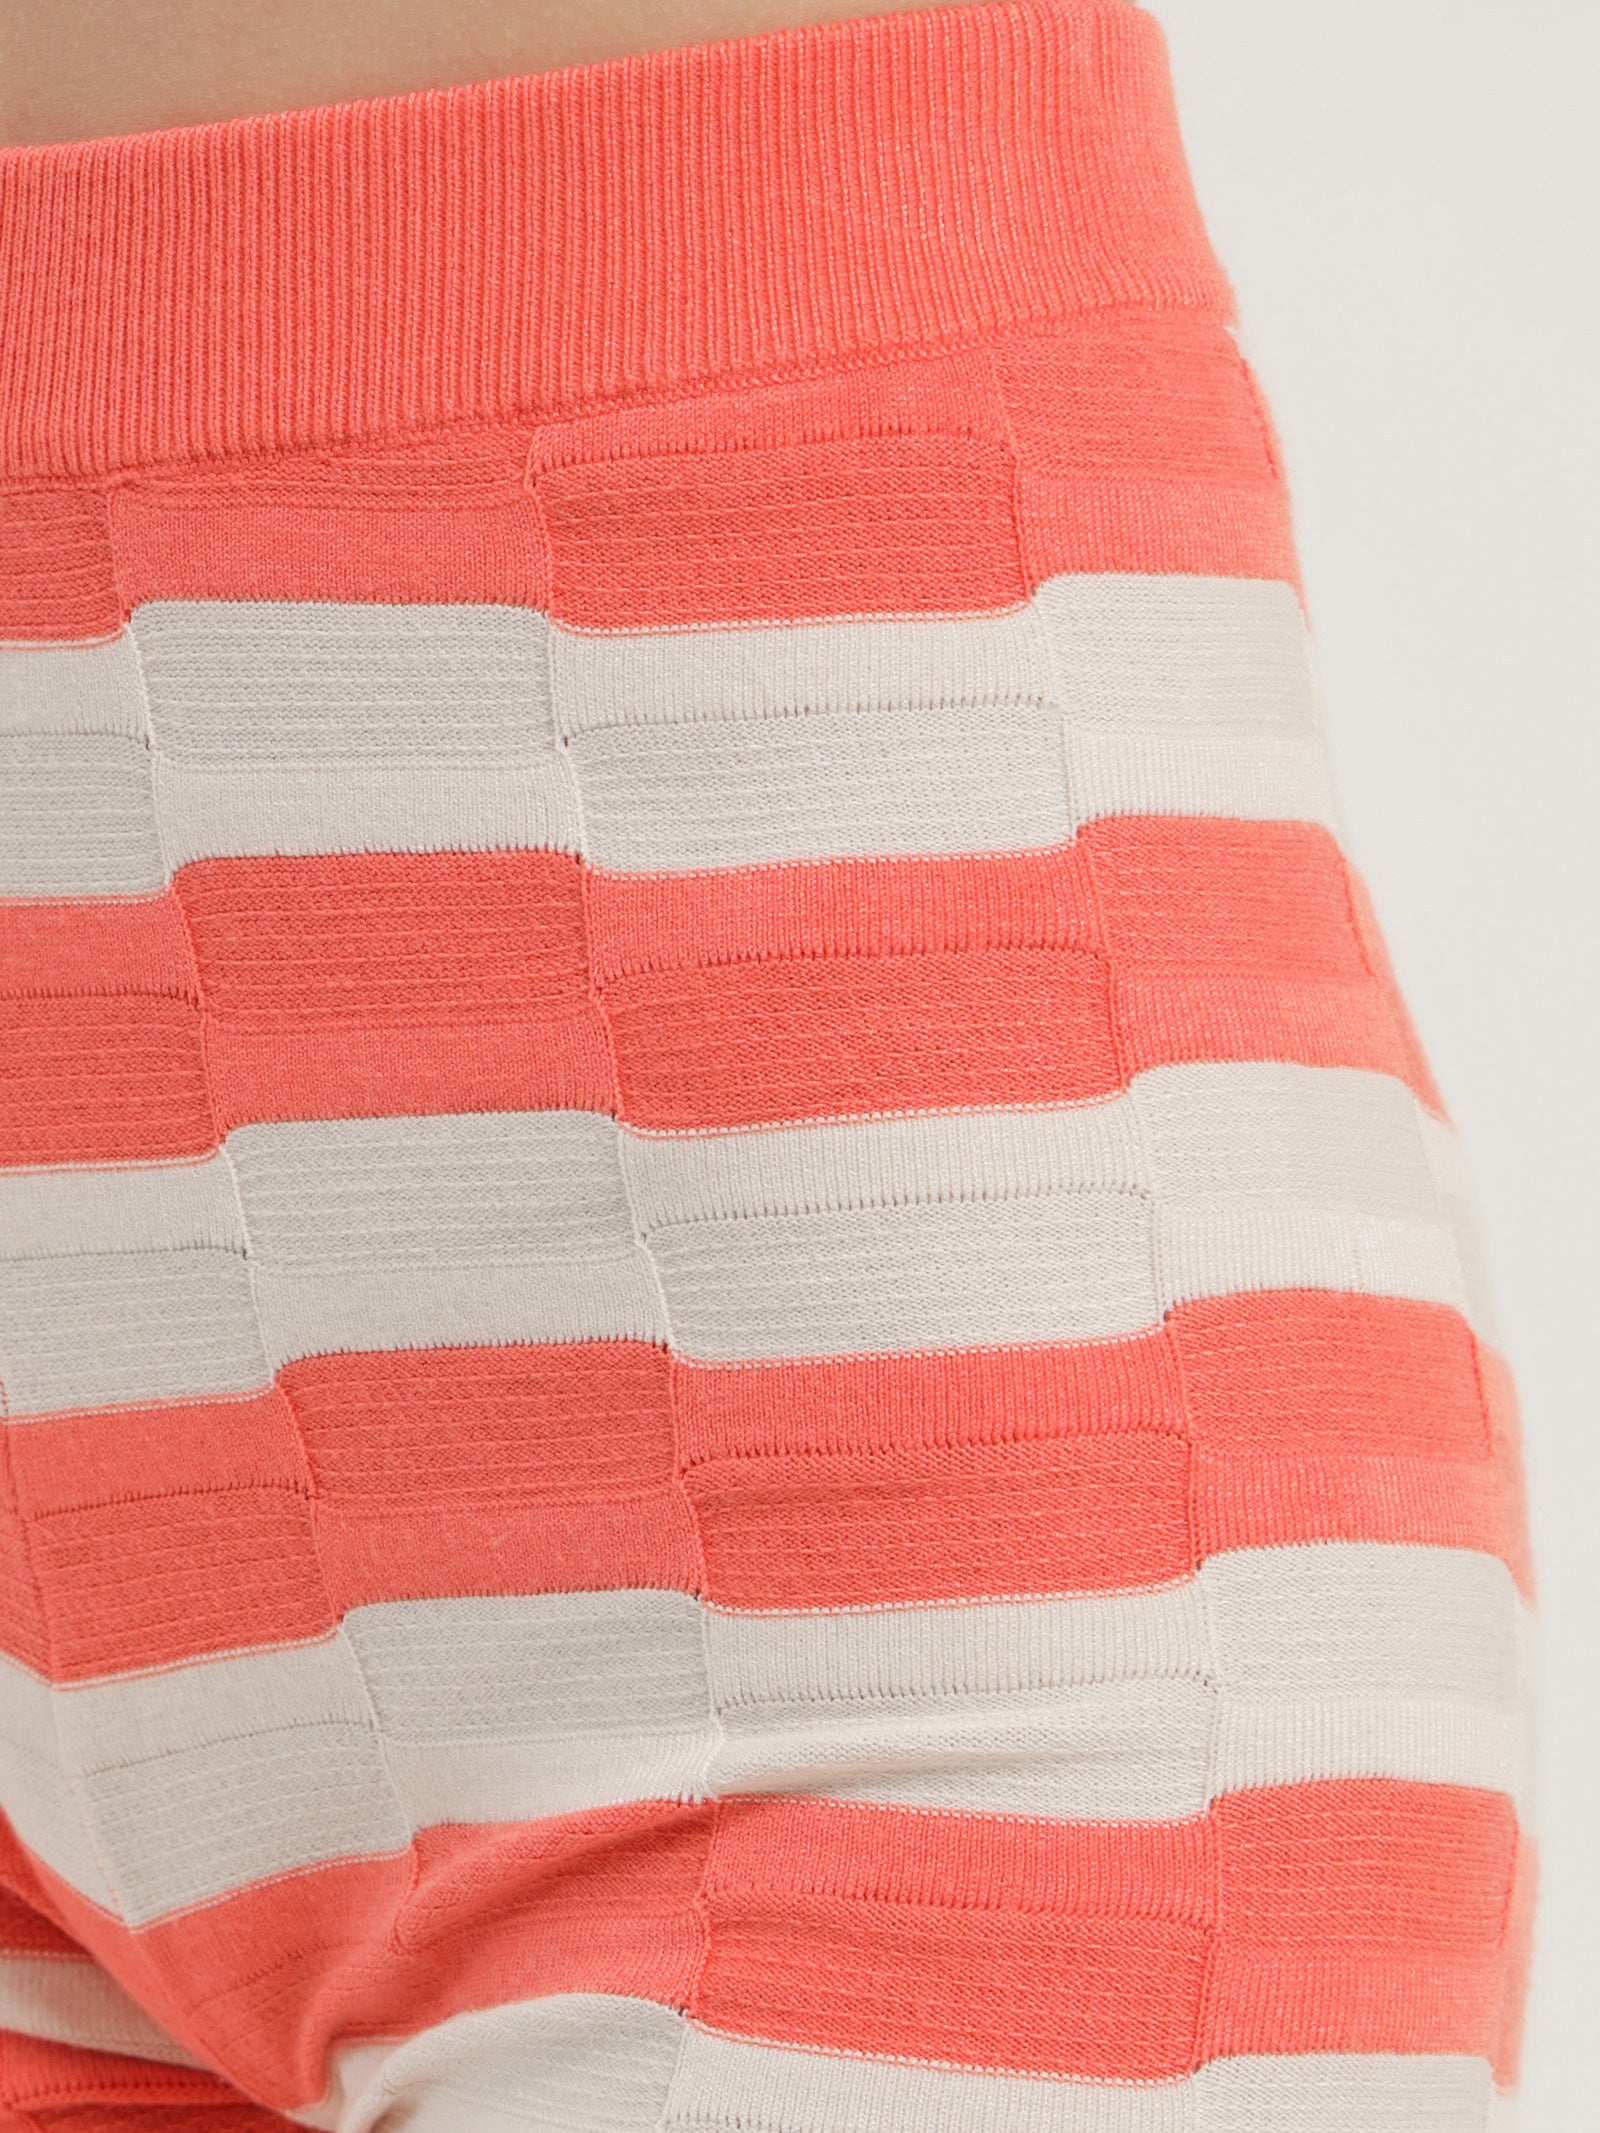 Sorbet Knit Shorts in Popsicle Orange